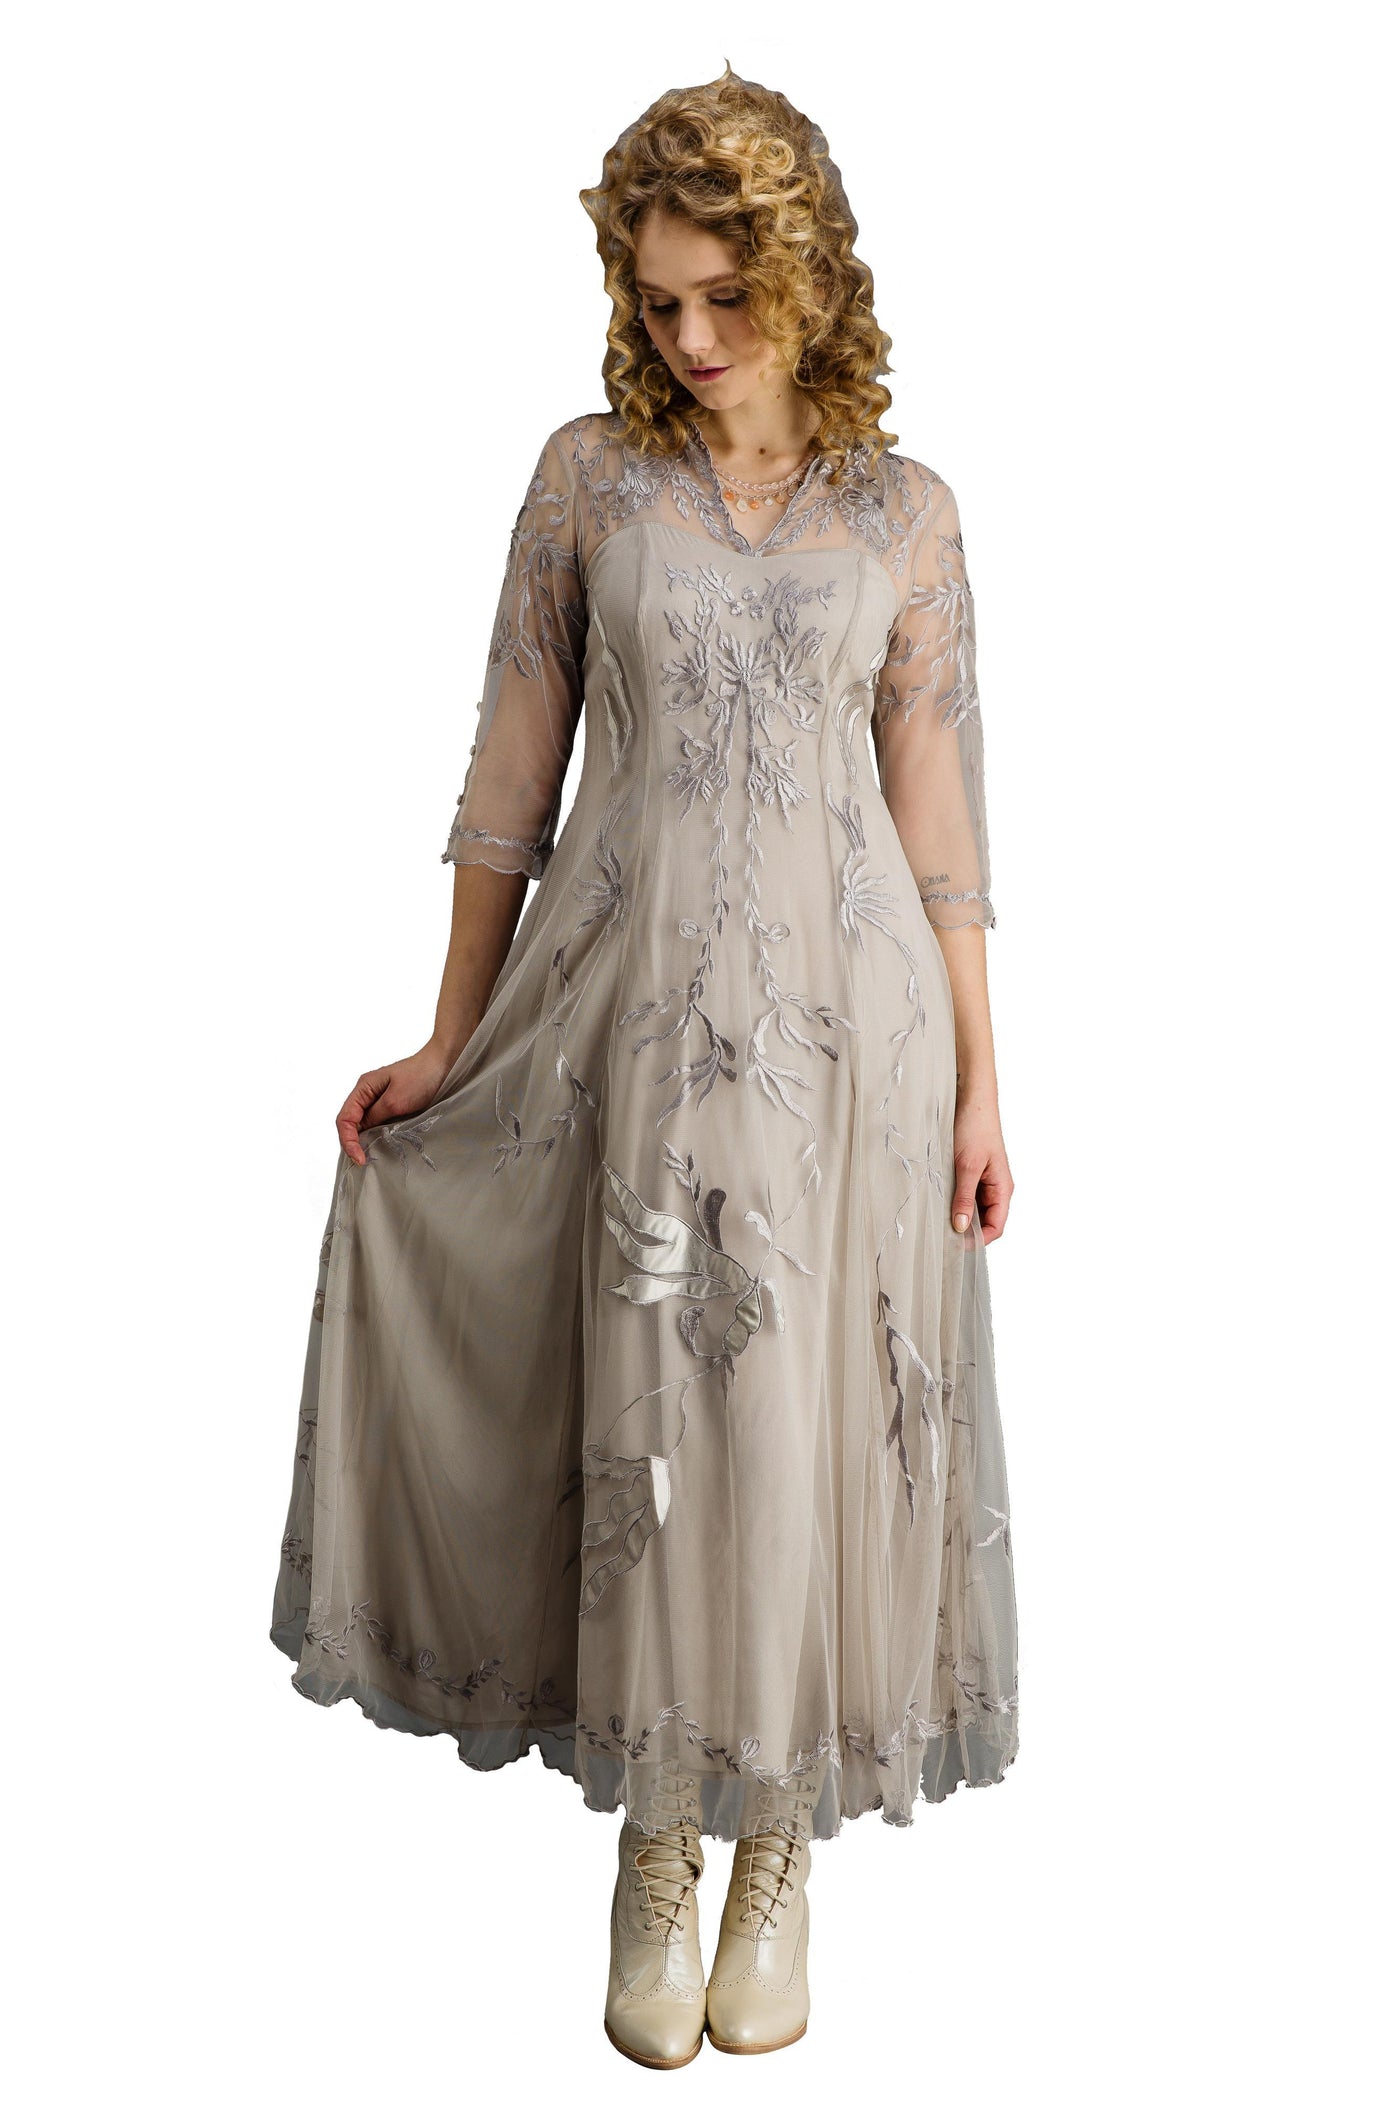 Elizabeth Vintage Style Wedding Gown in Silver-Grey by Nataya